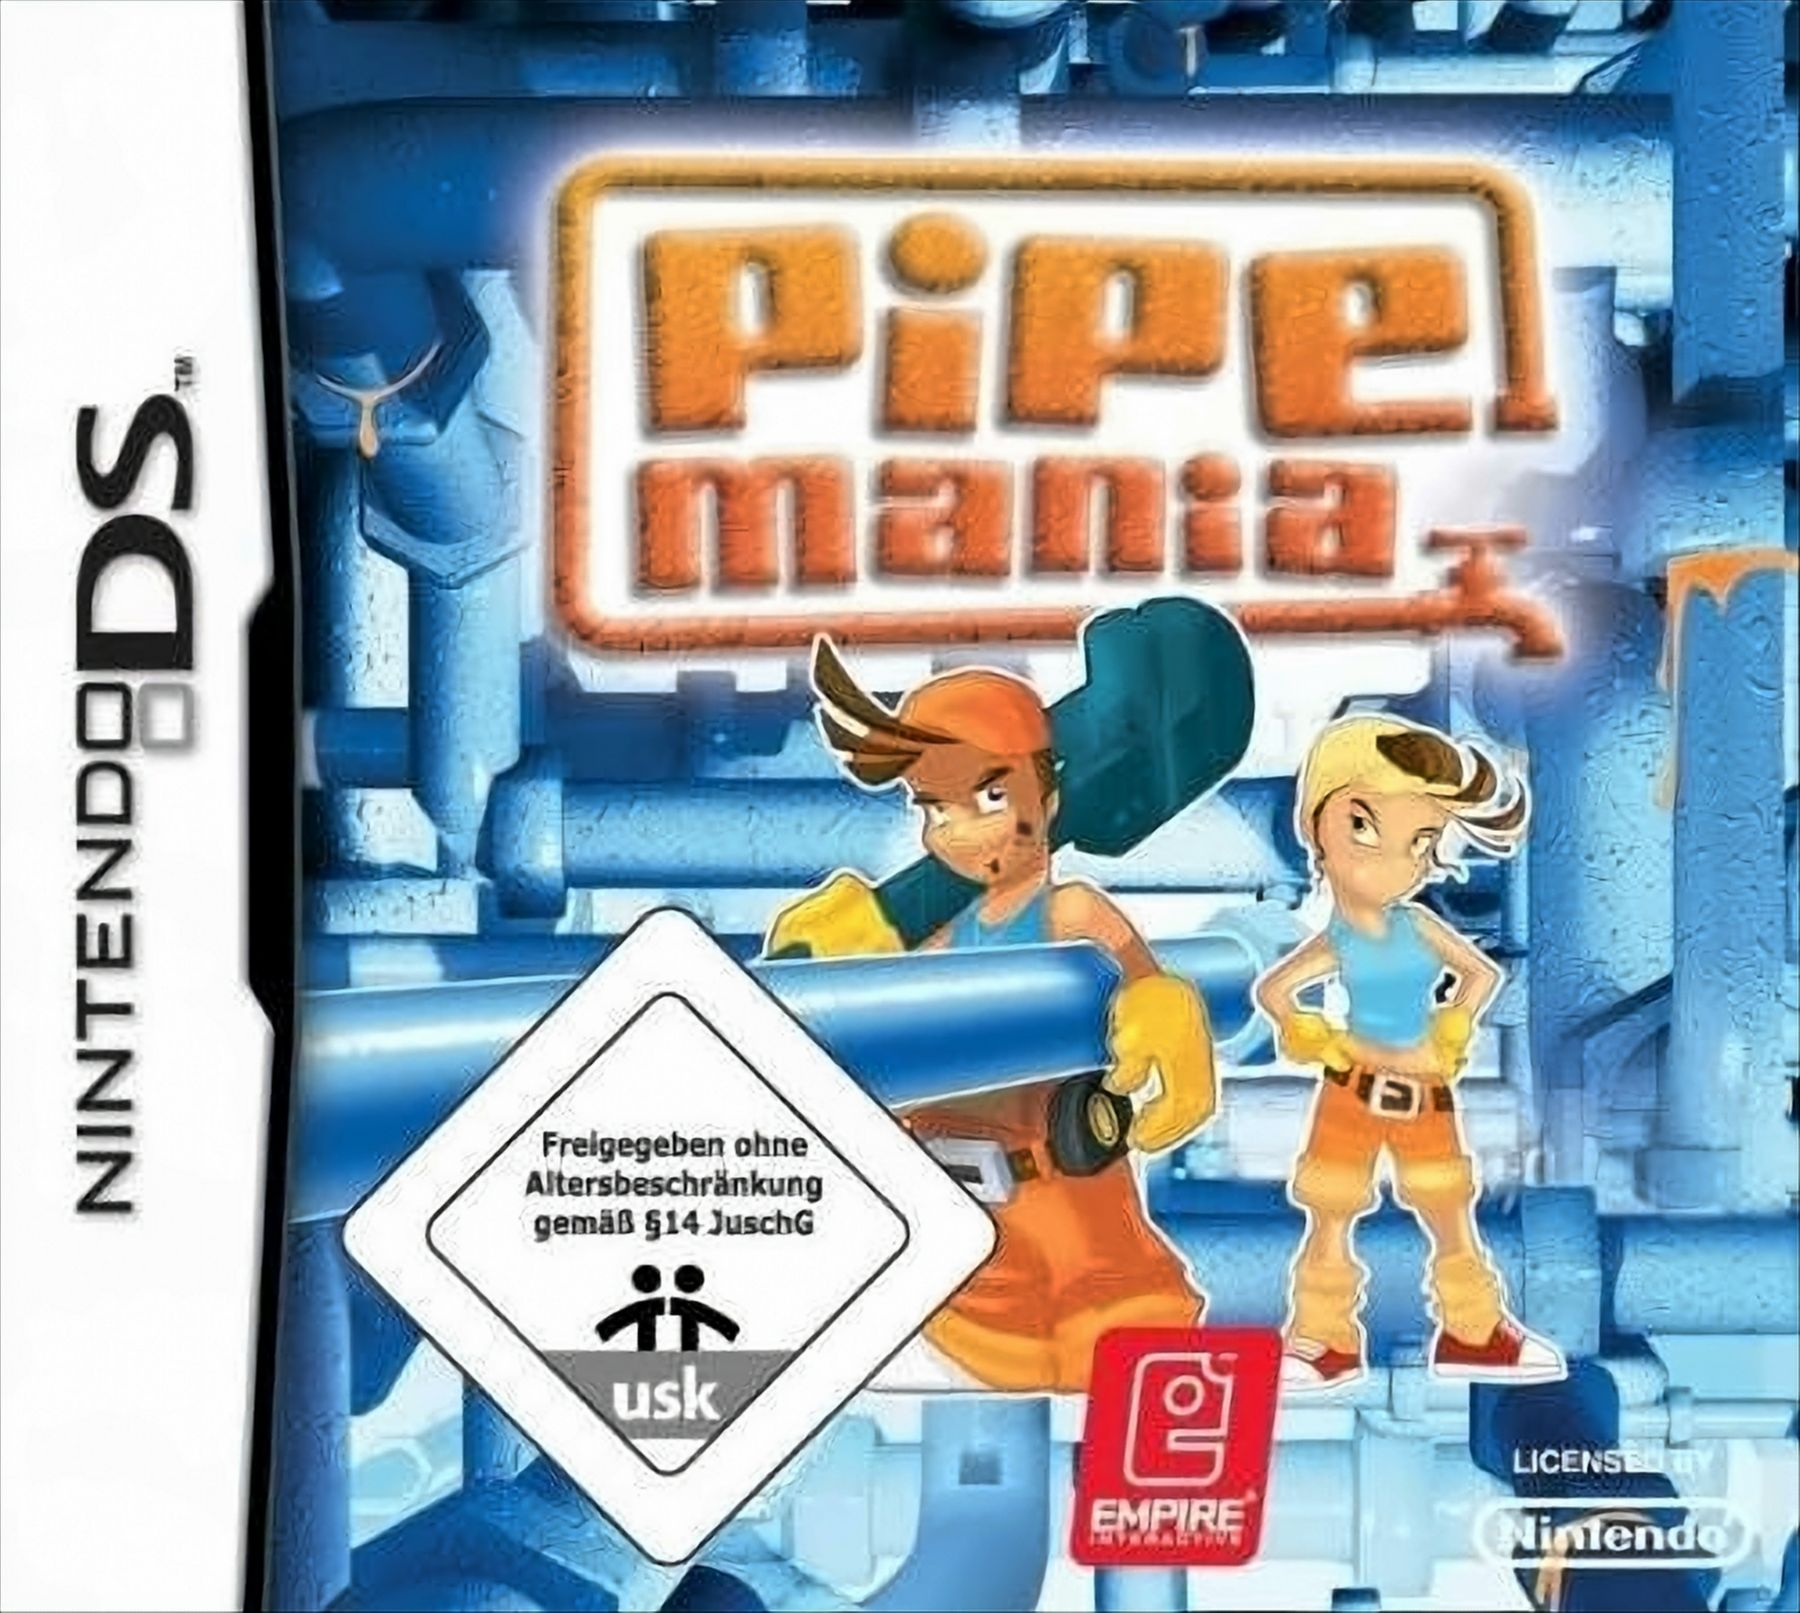 Pipe Mania [Nintendo - DS